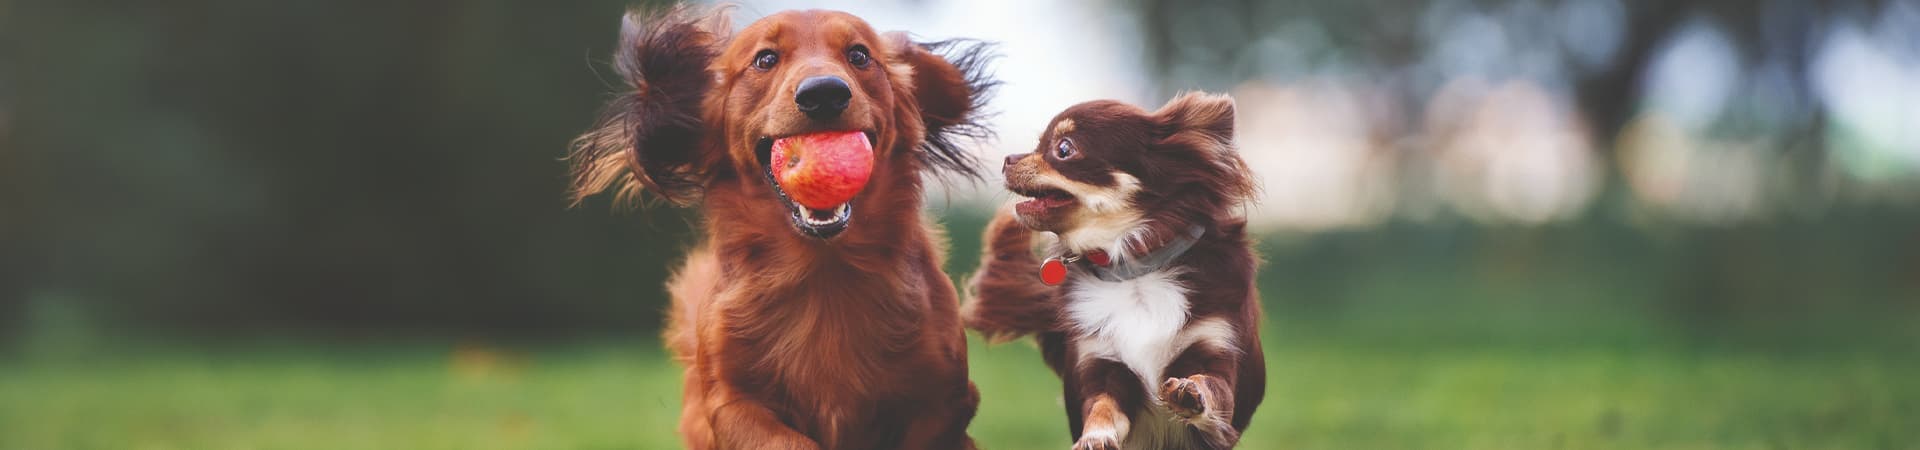 Zwei Hunde rennen über die Wiese mit einem Apfel